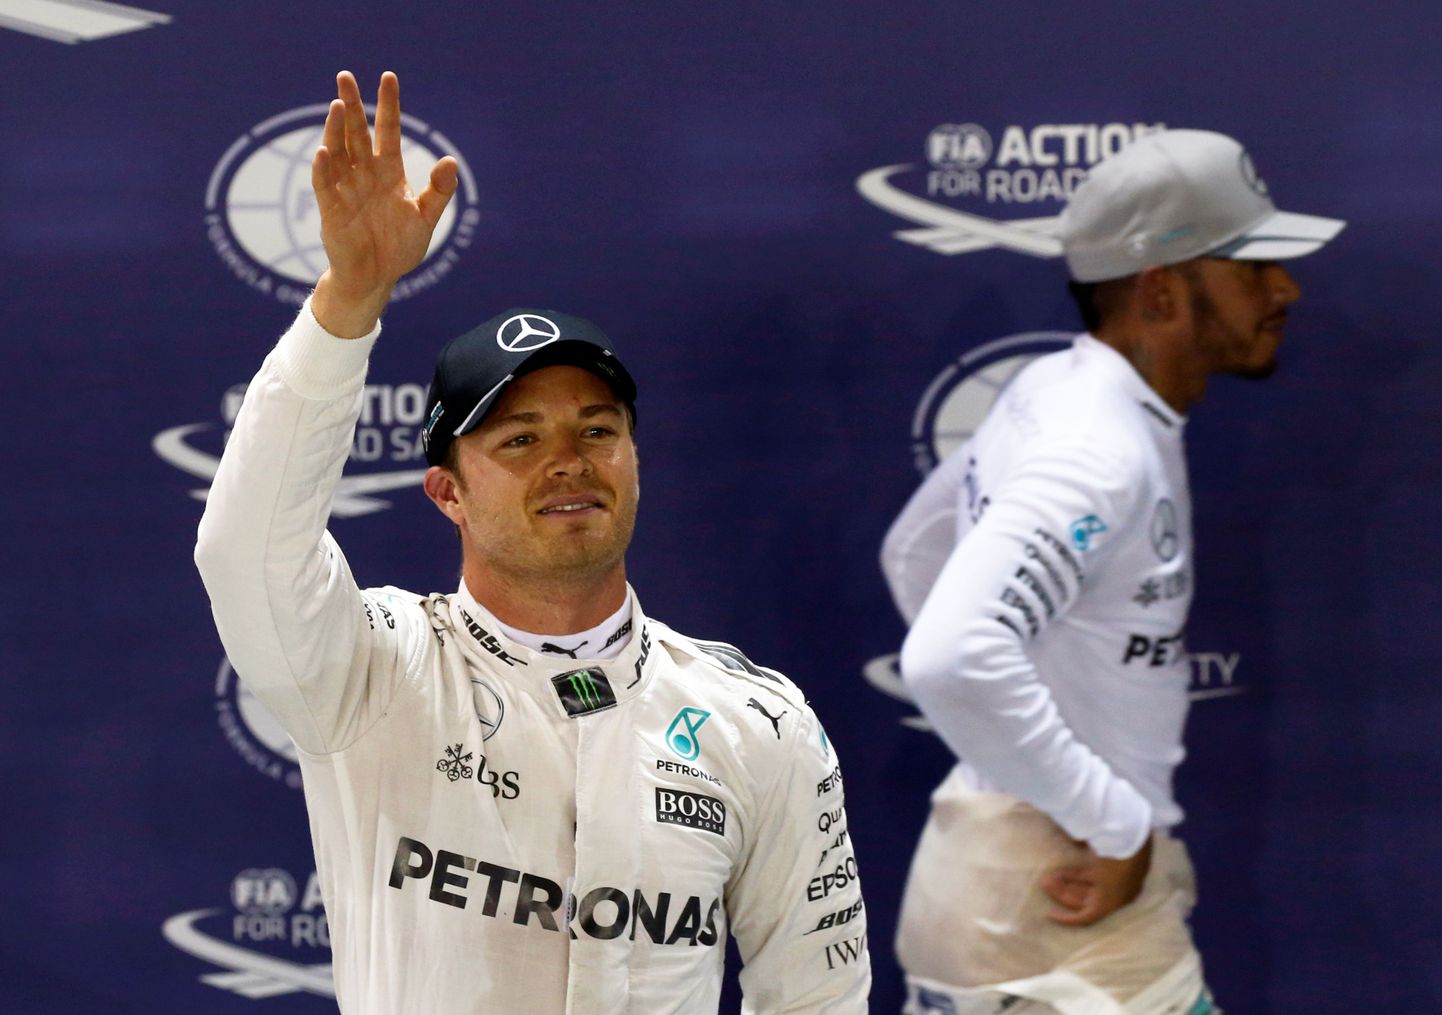 Nico Rosberg surub oma tiimikaaslase Lewis Hamiltoni tagaplaanile.